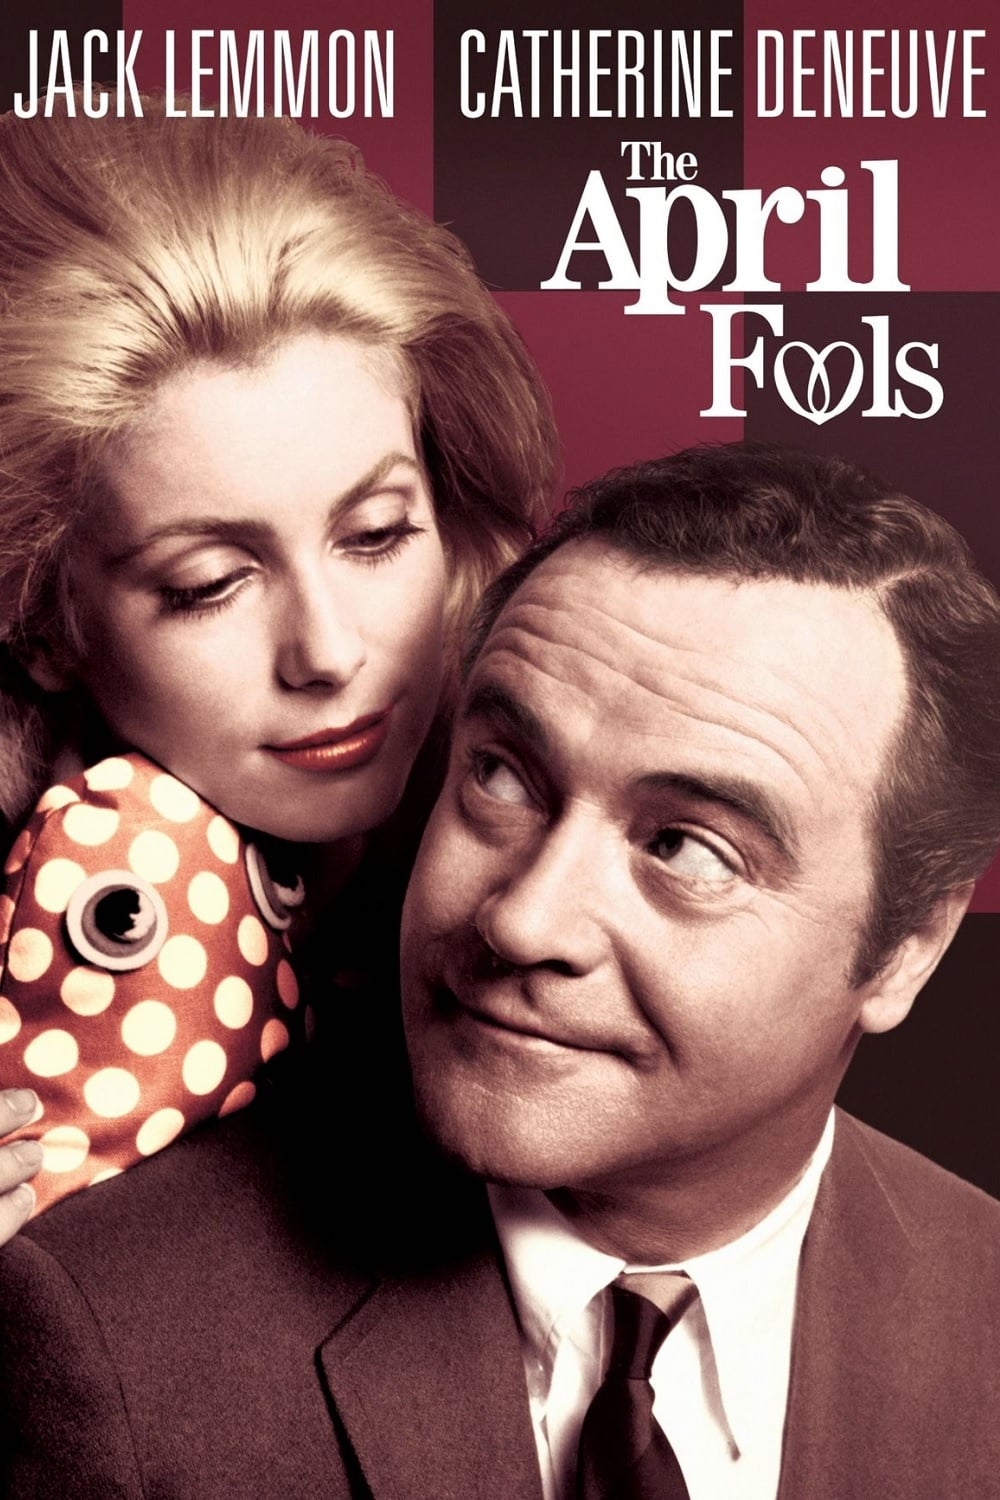 The April Fools (1969)